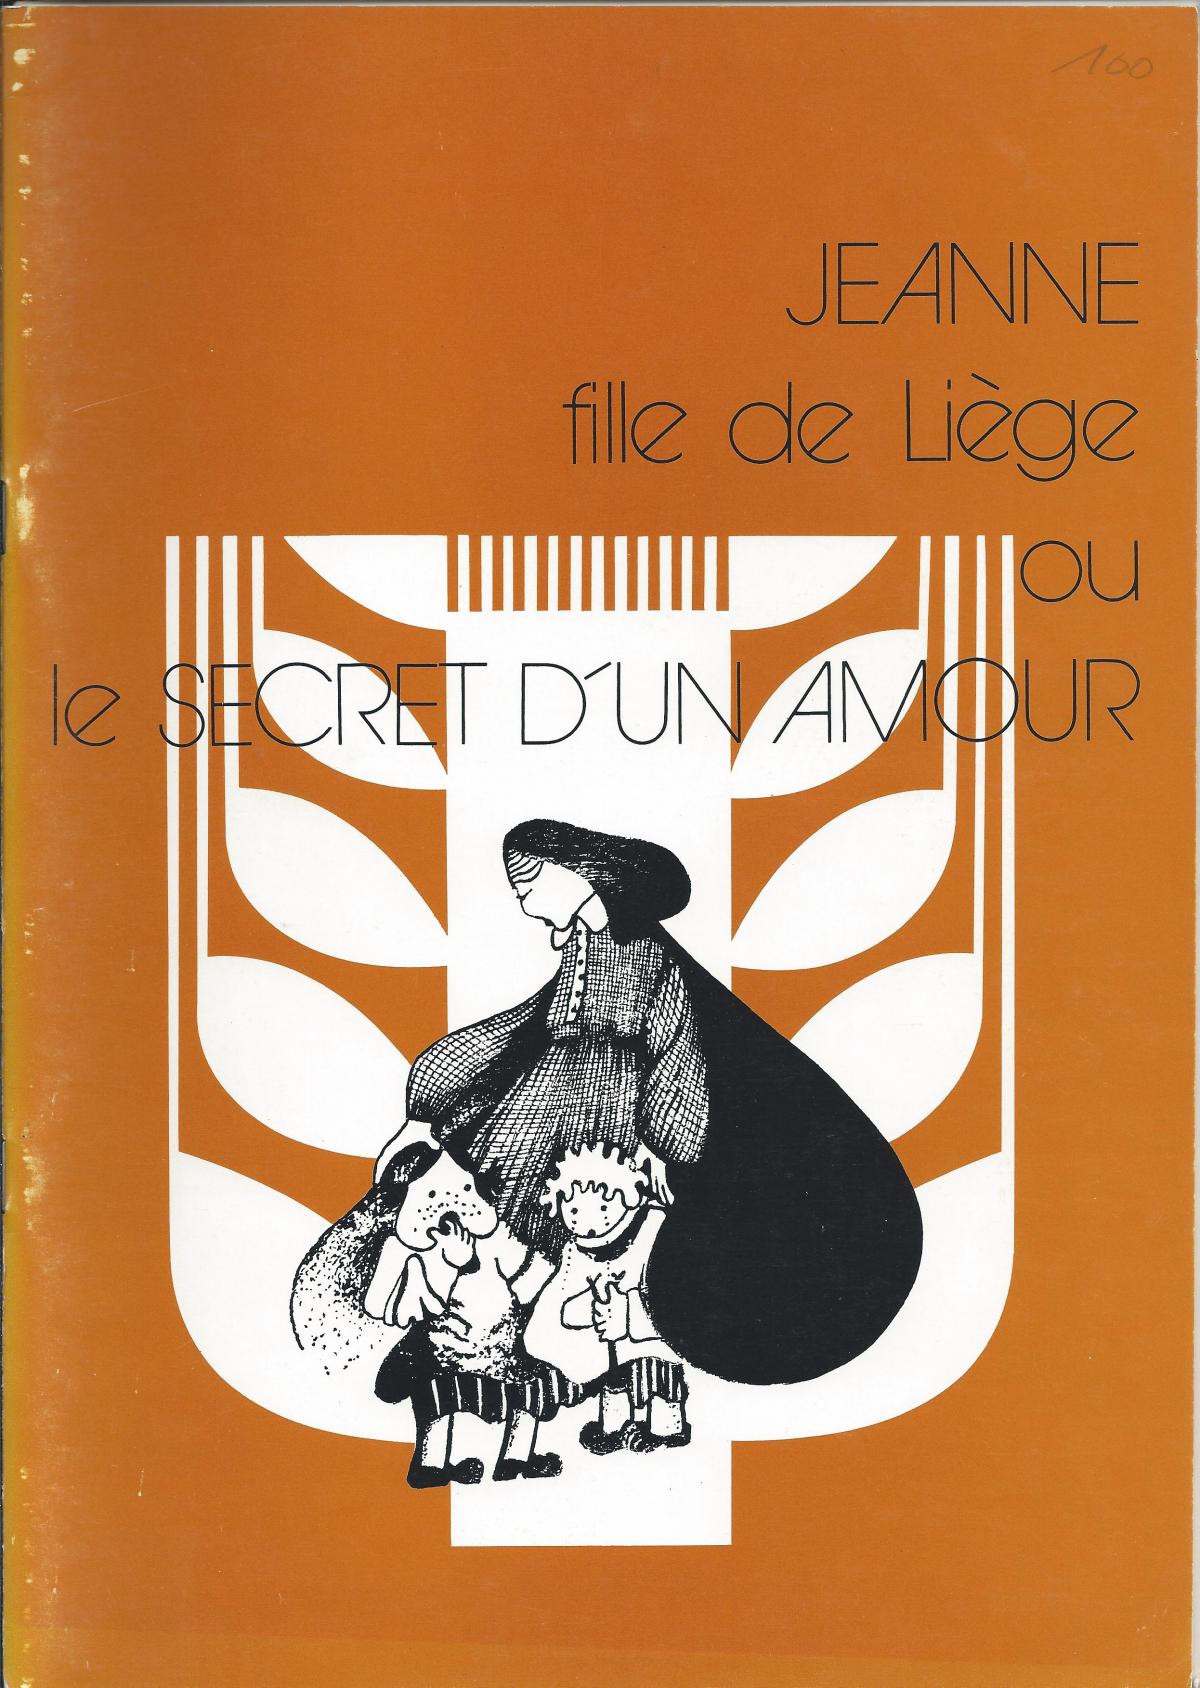 Jeanne, fille de Liège ou le secret d'un amour